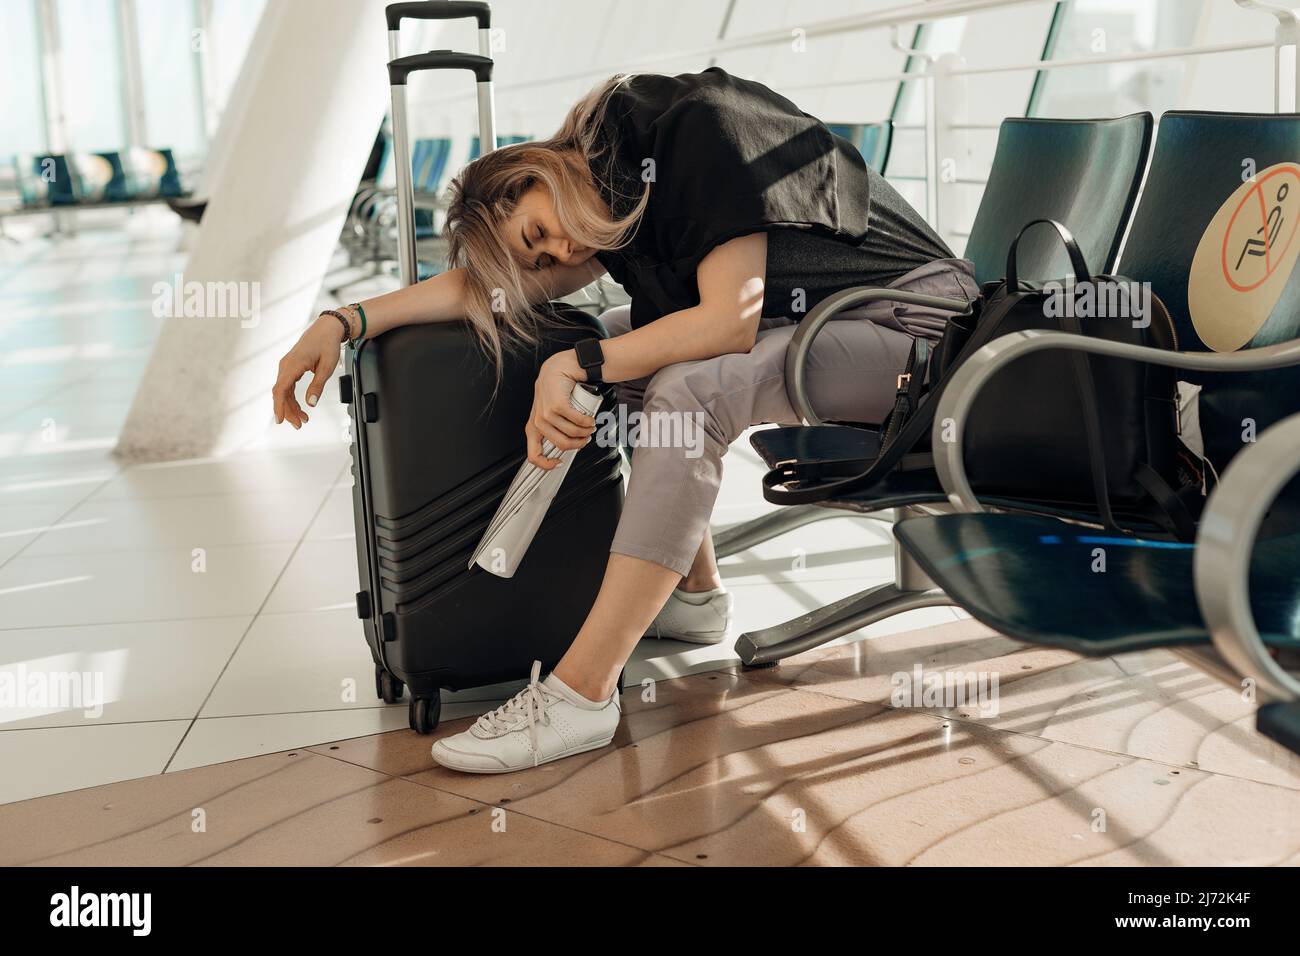 Femme blonde fatiguée et somnolente vêtue de vêtements décontractés avec bagages, penchée sur des sacs, assise dans le terminal de l'aéroport. Annuler le vol Banque D'Images